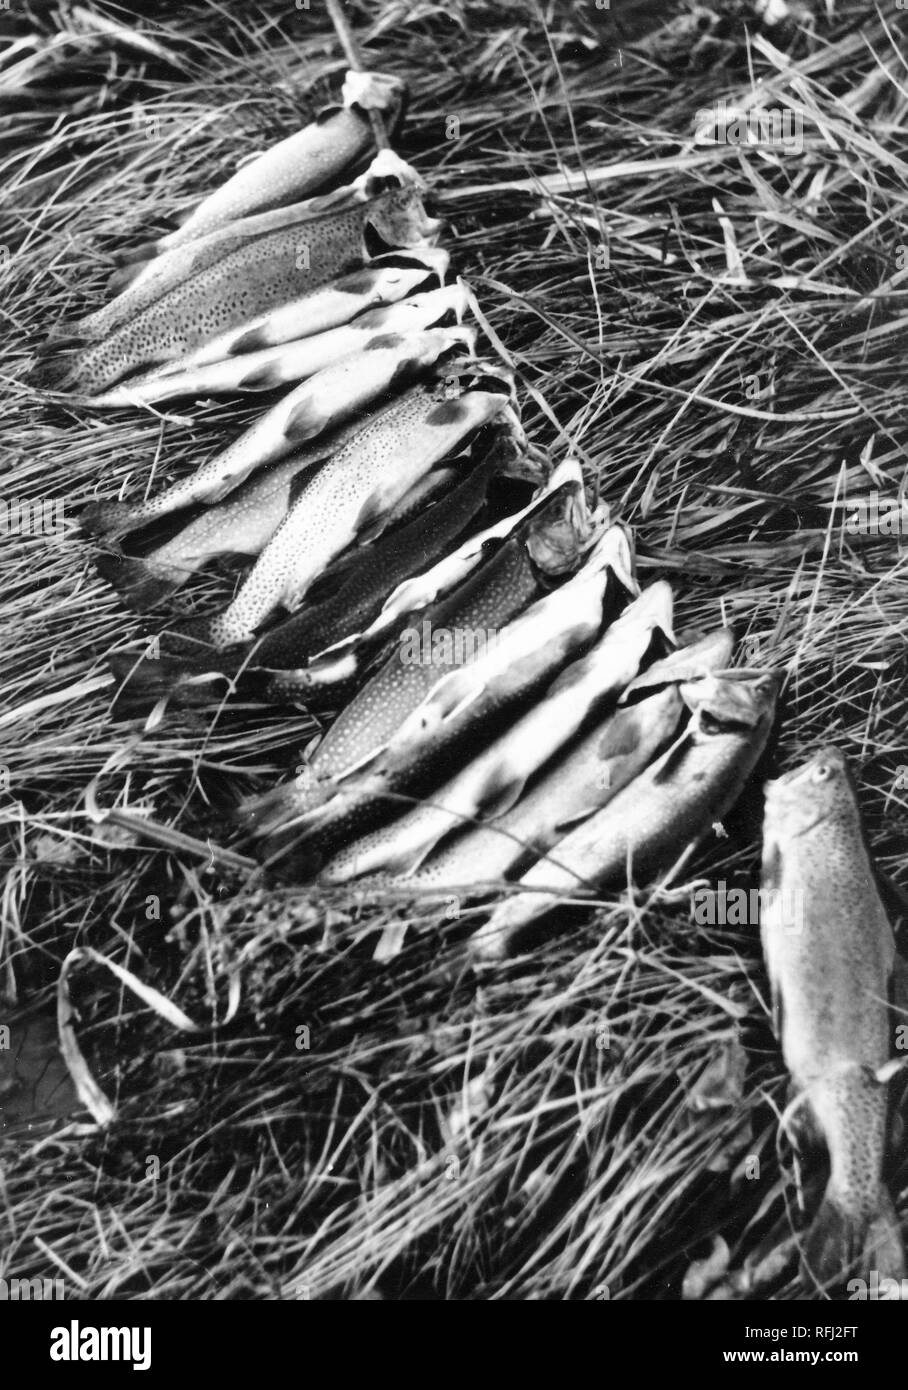 Schwarz-weiß Foto eines großen Fang von Fischen mit unregelmäßigen Flecken auf dem dorsalen Flächen, wahrscheinlich Chinook salmon (Oncorhynchus Tshawytscha) zusammen aufgereiht mit einer Stange durch ihre Kiemen aufliegt und auf langen Flügel von zerdrücktem Gras, fotografiert während einer Jagd und Angeln in Alaska, USA, 1955. () Stockfoto